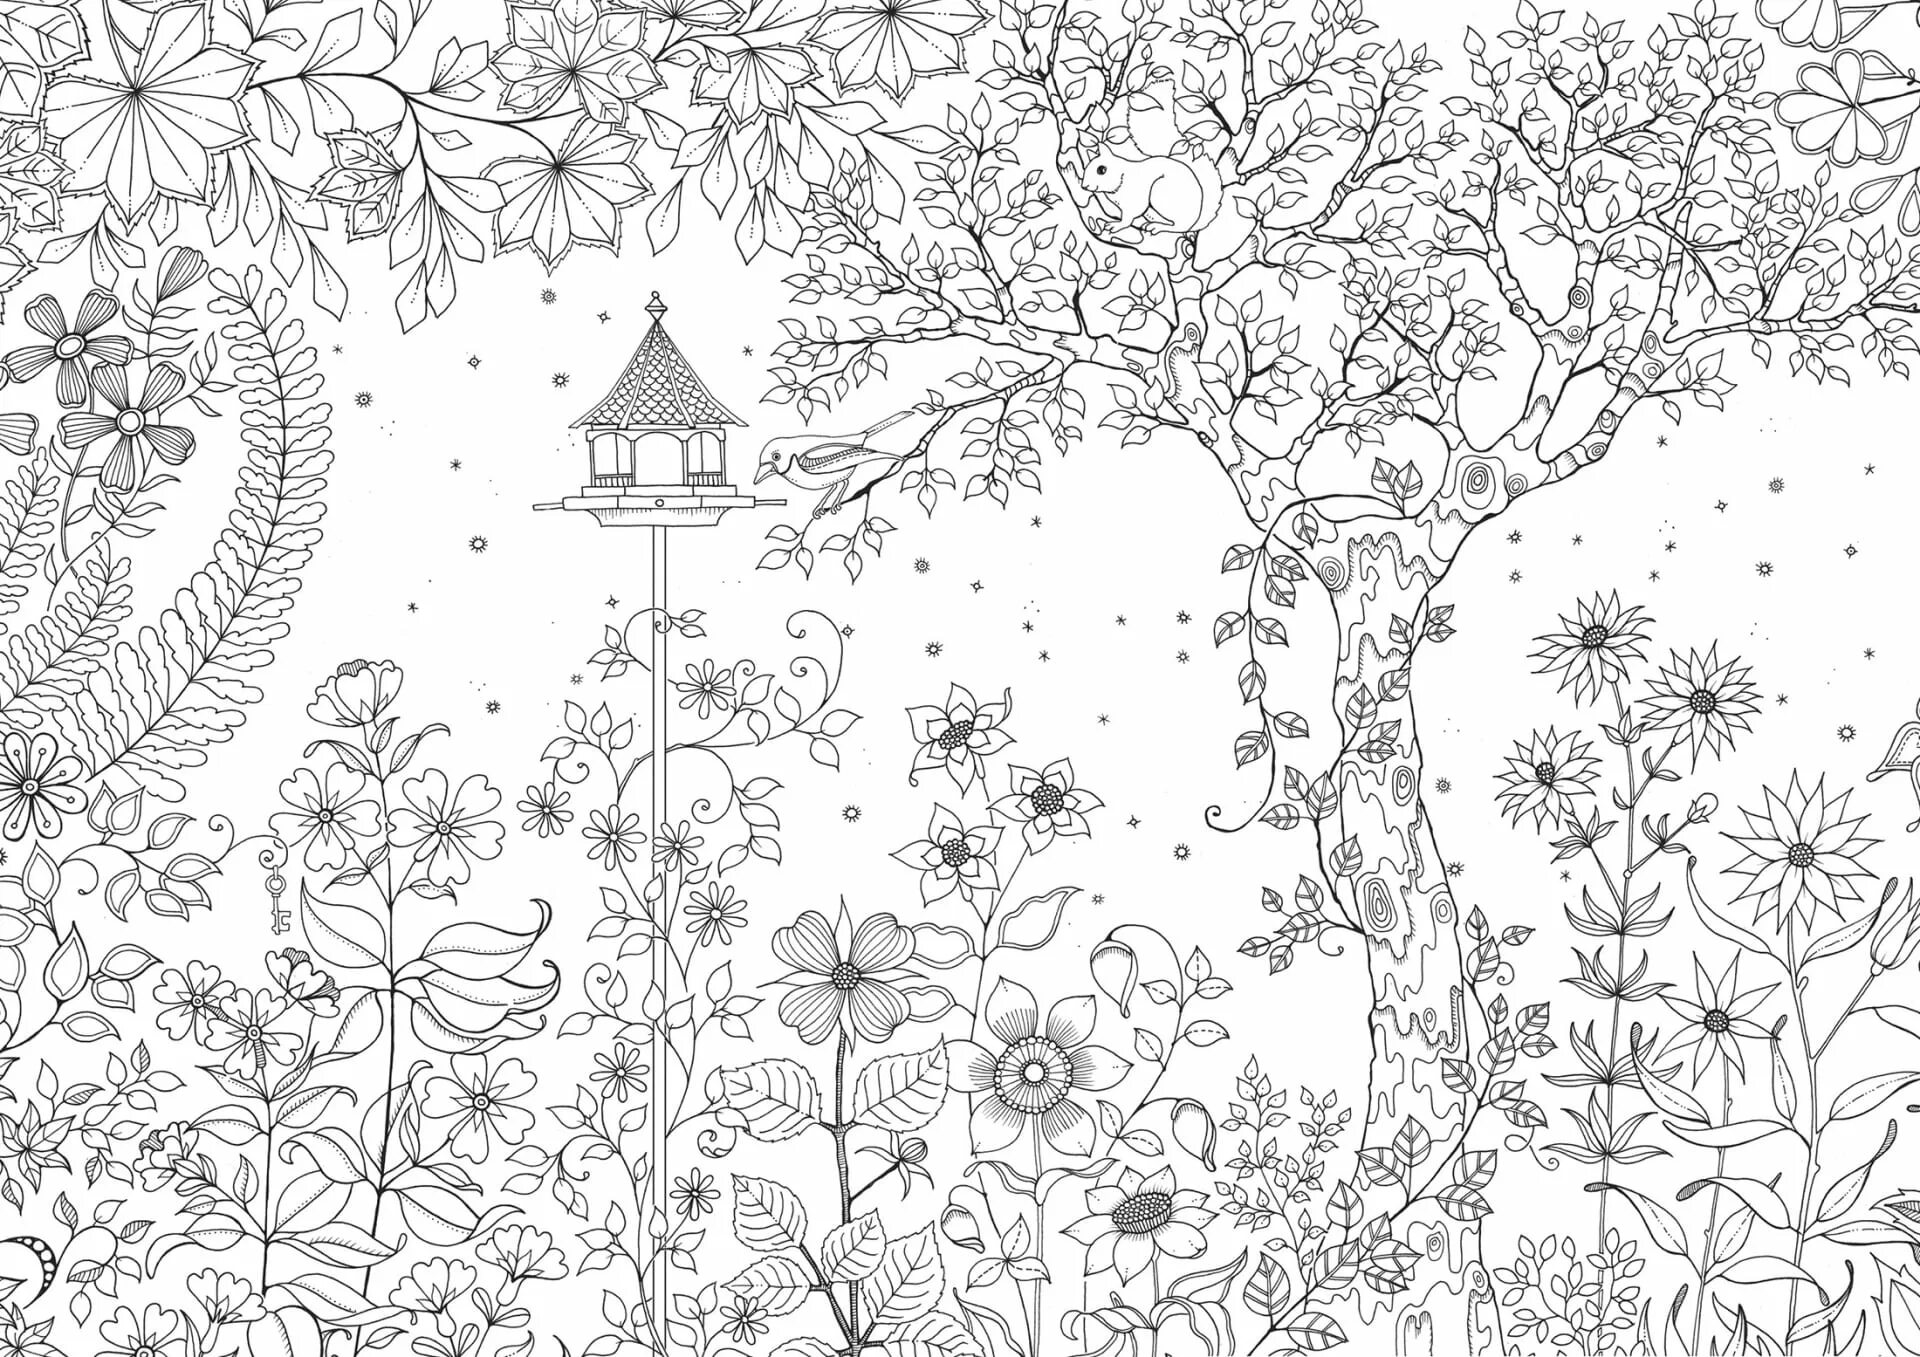 Трава антистресс. Джоанна Бэсфорд таинственный сад. Бэсфорд Джоанна "мир цветов". Джоанна Бэсфорд таинственный лес. Раскраска таинственный сад Джоанна Басфорд.